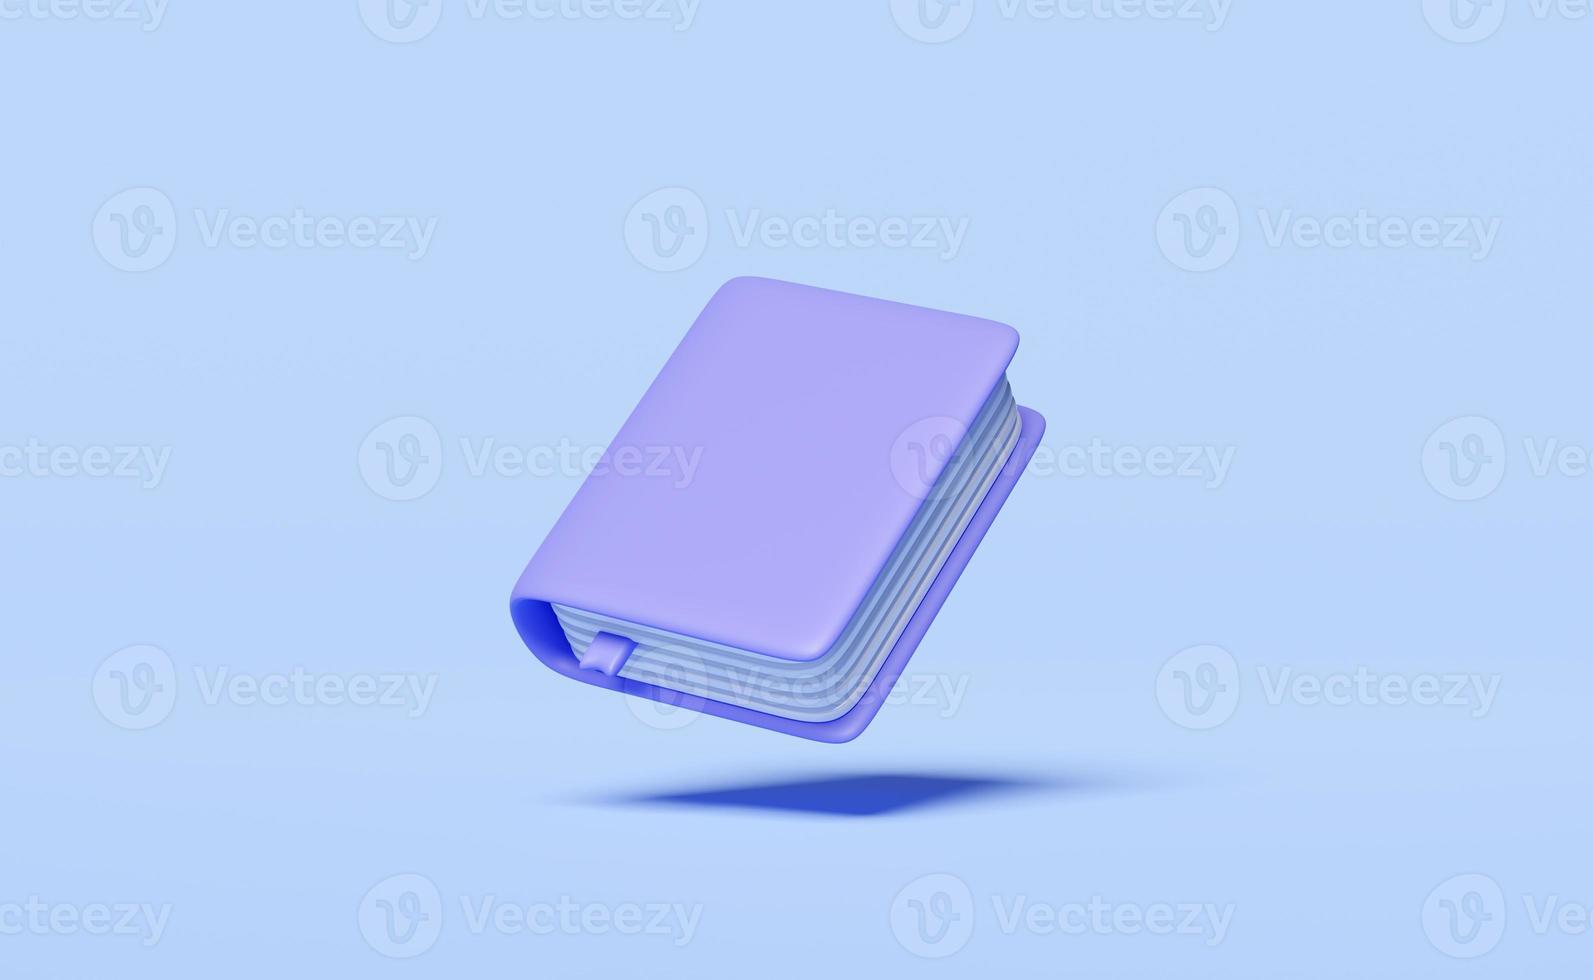 manuel violet 3d, livre fermé isolé sur fond bleu. l'éducation, la connaissance crée un concept d'idées, un résumé minimal, une illustration de rendu 3d photo